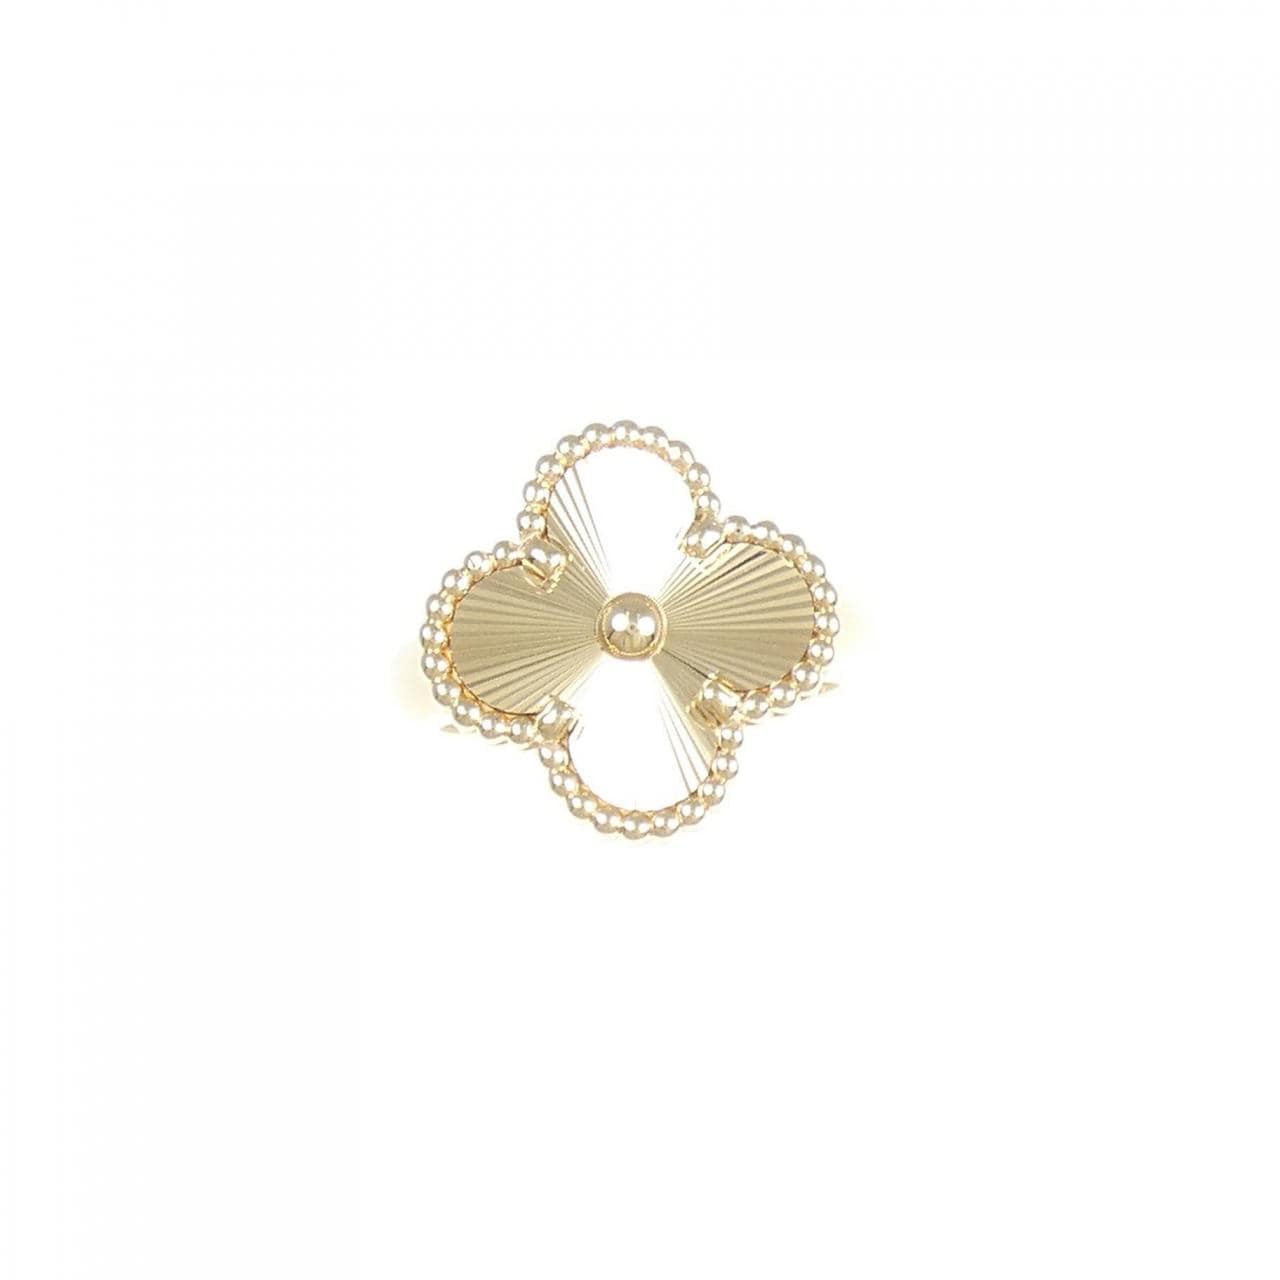 Van Cleef & Arpels vintage Alhambra Ring